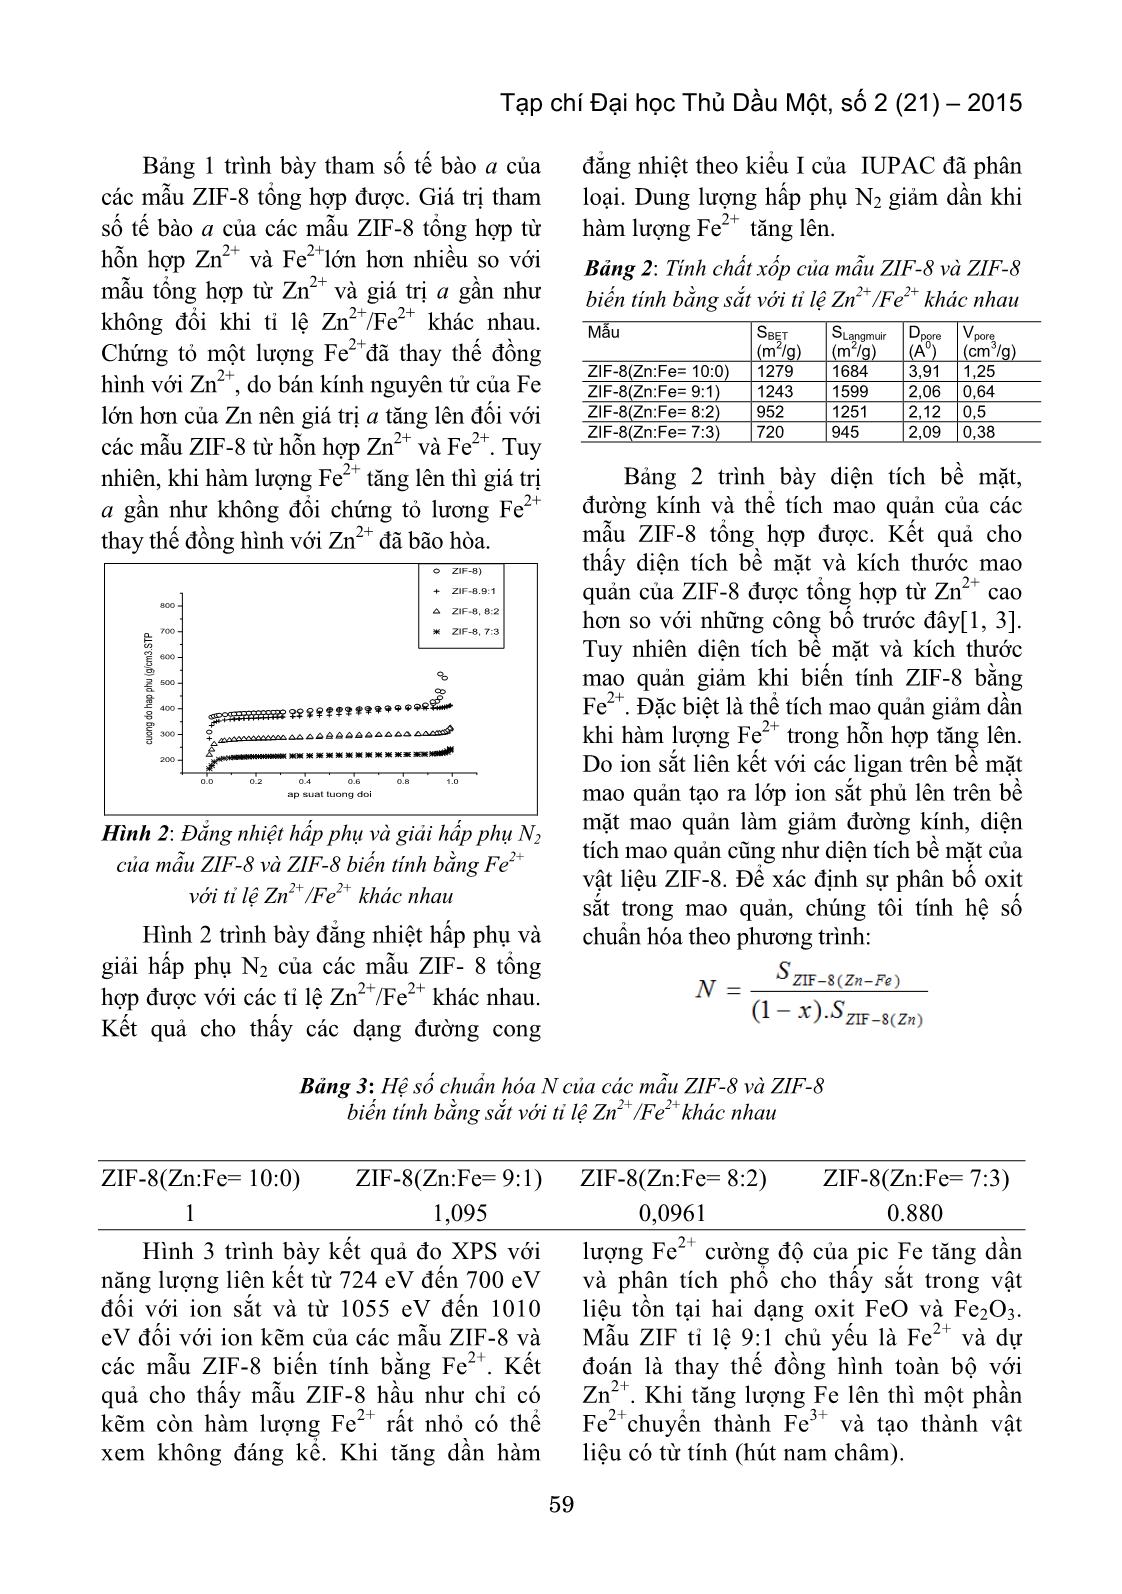 Nghiên cứu tổng hợp vật liệu ZIF-8 (Zn, Fe) trang 3